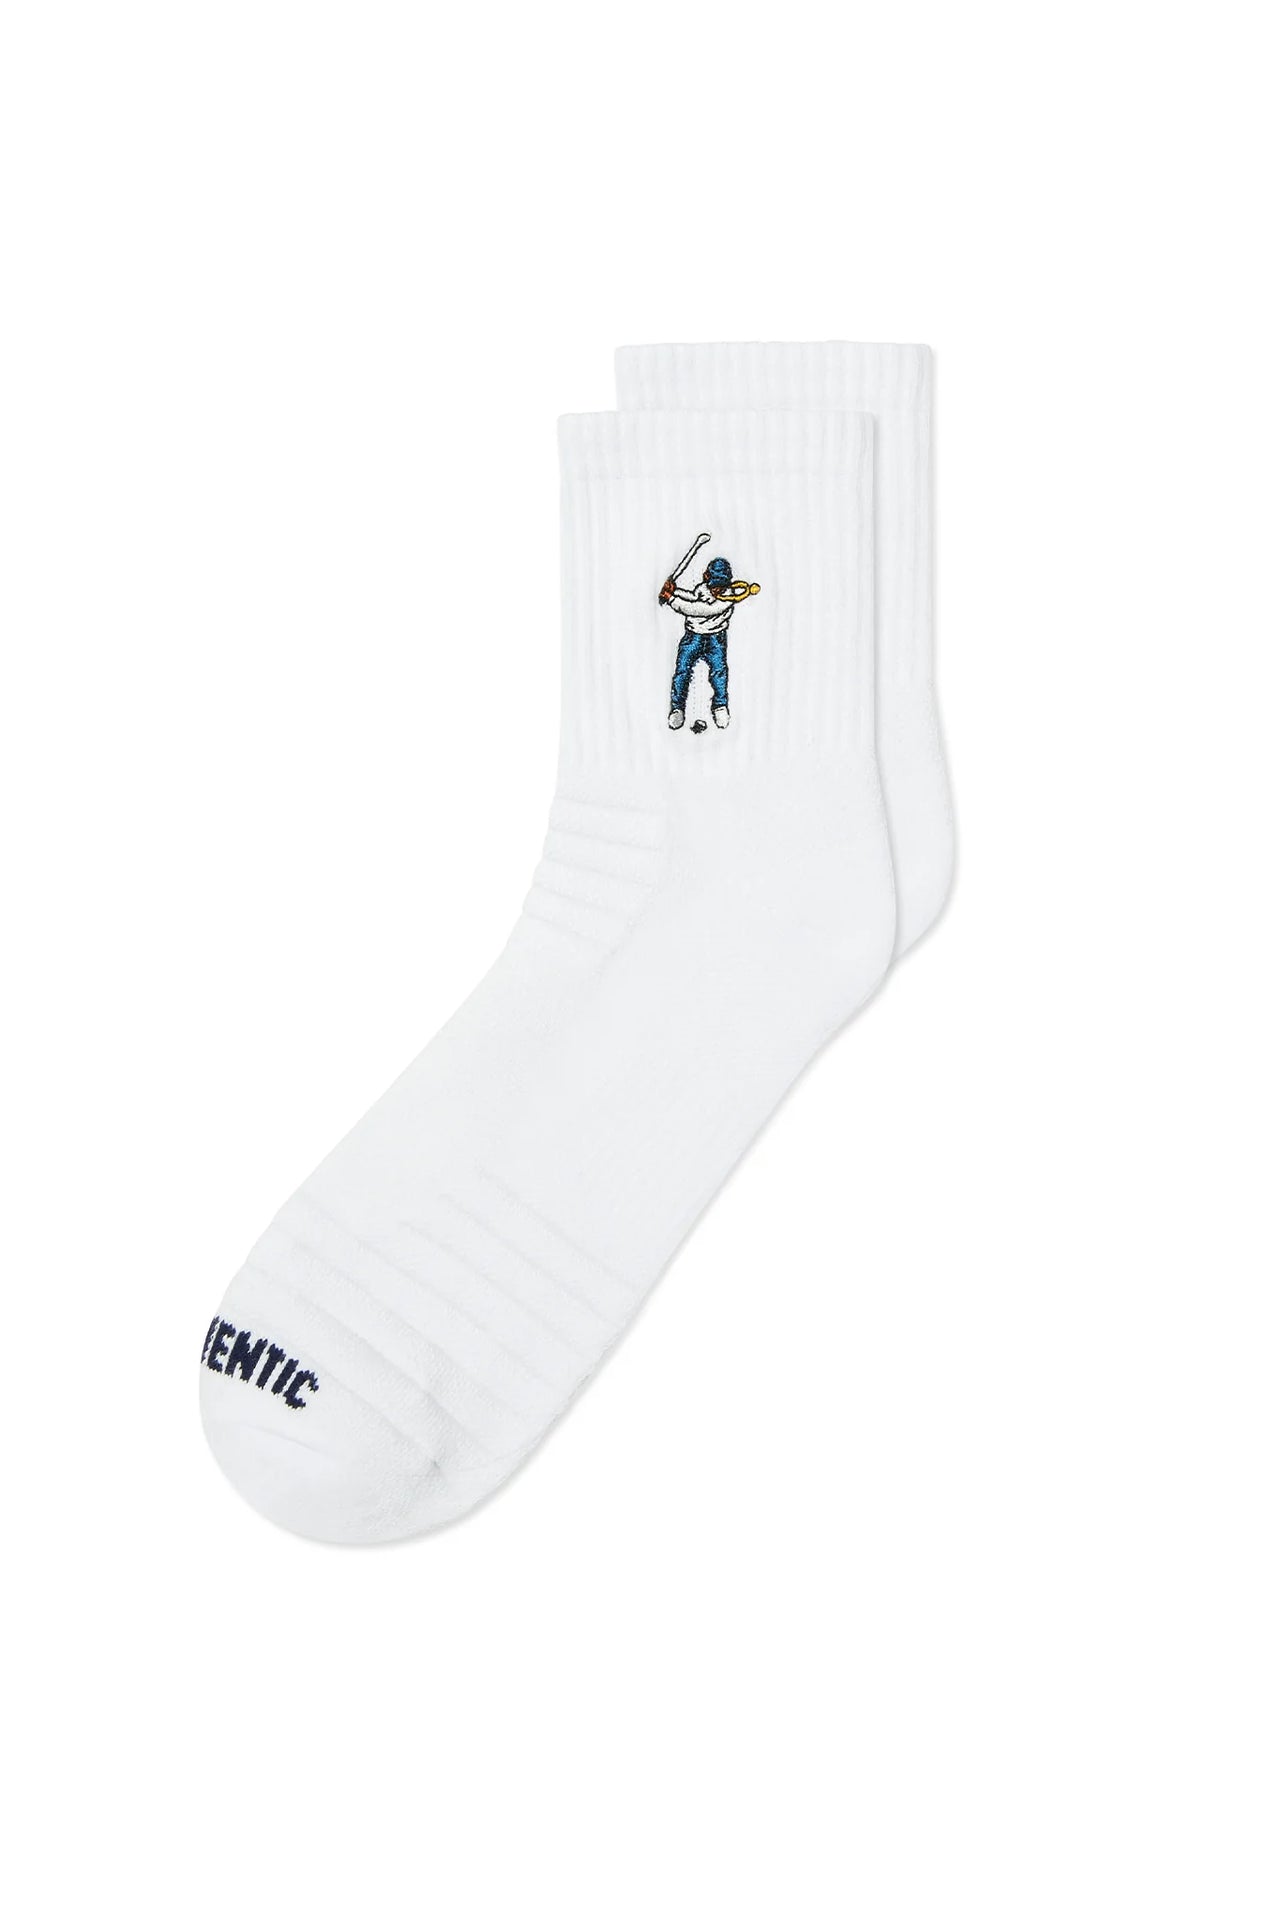 Eastside Golf Ankle Sock - White